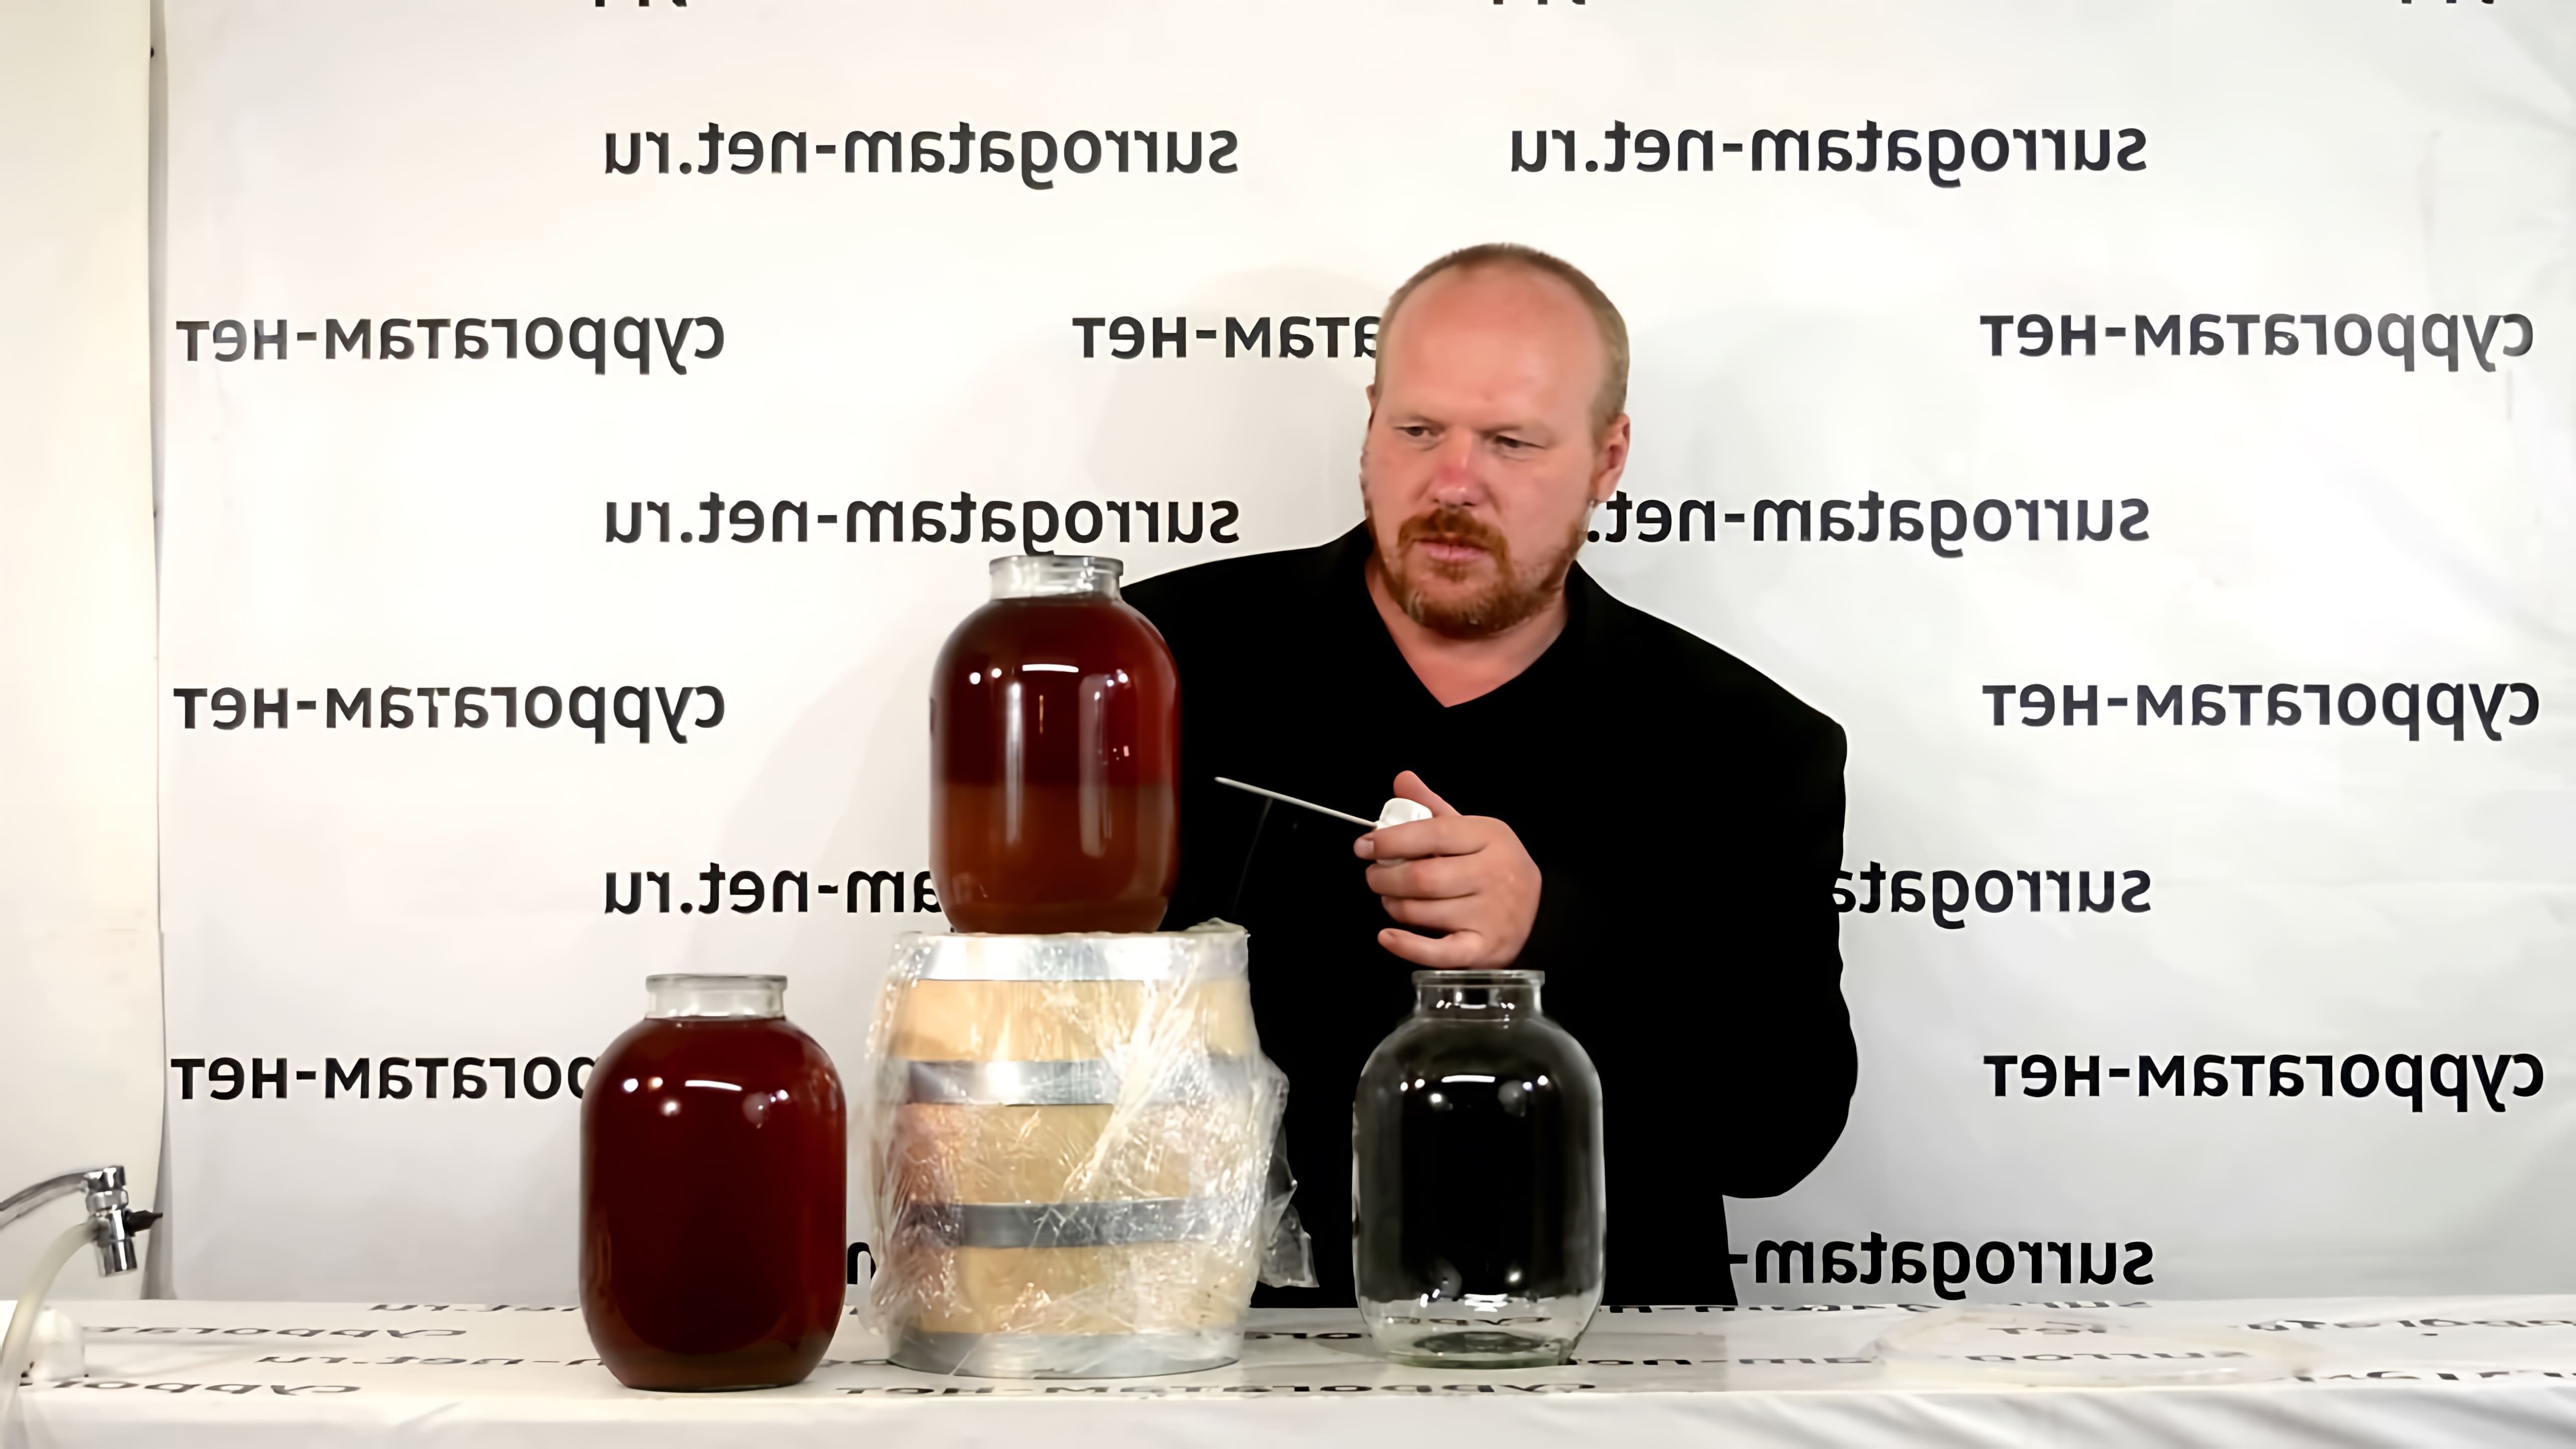 В этом видео демонстрируется процесс приготовления клубничного вина по двум разным рецептам